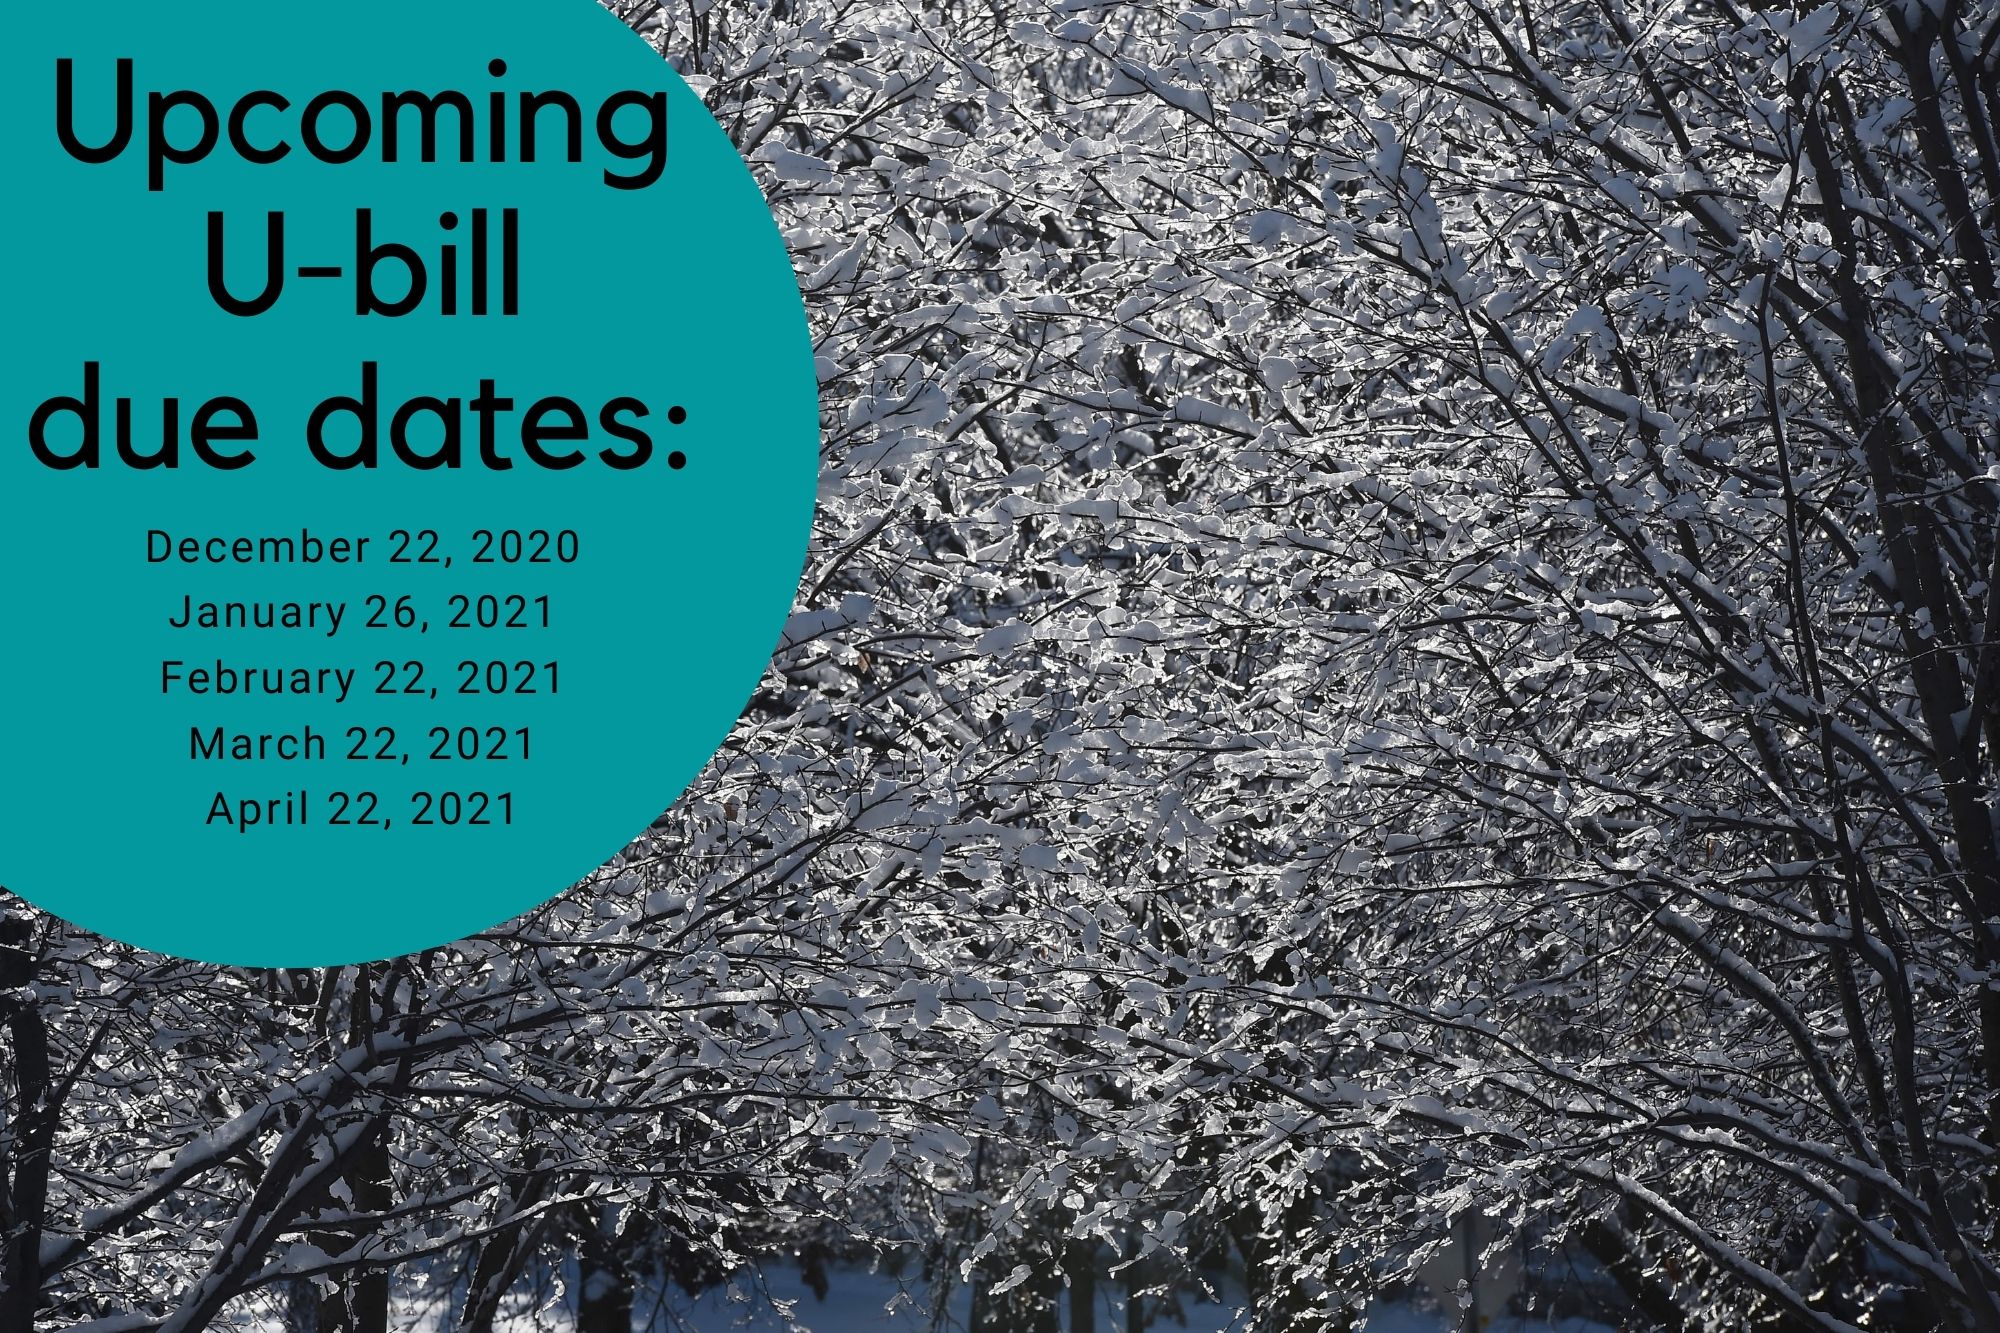 U-bill due dates